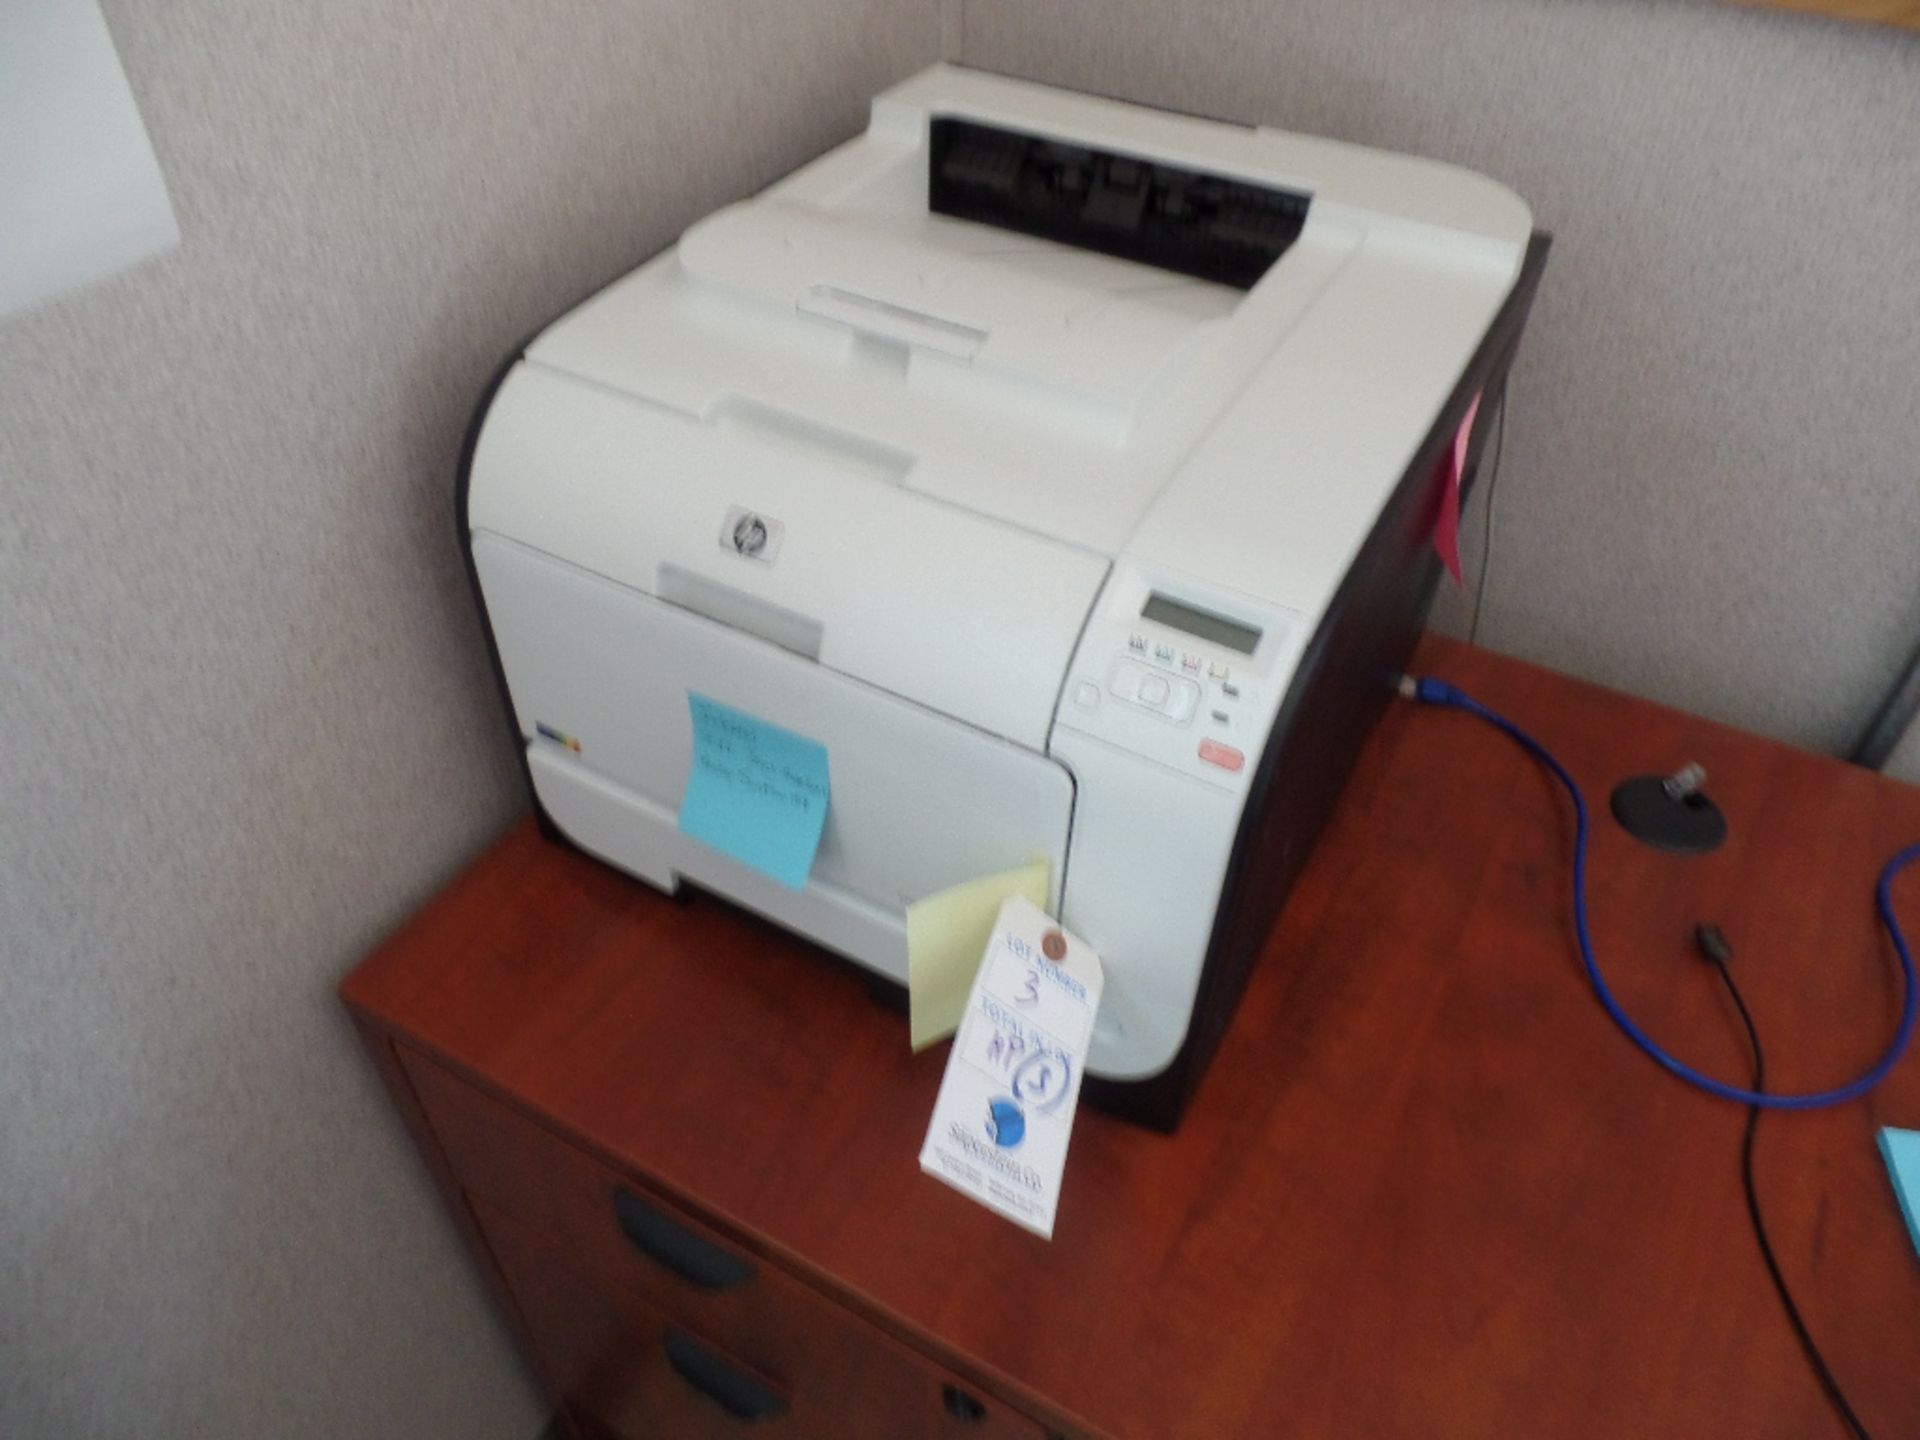 (3) HP Laser Jet Pro #400 Color Printer